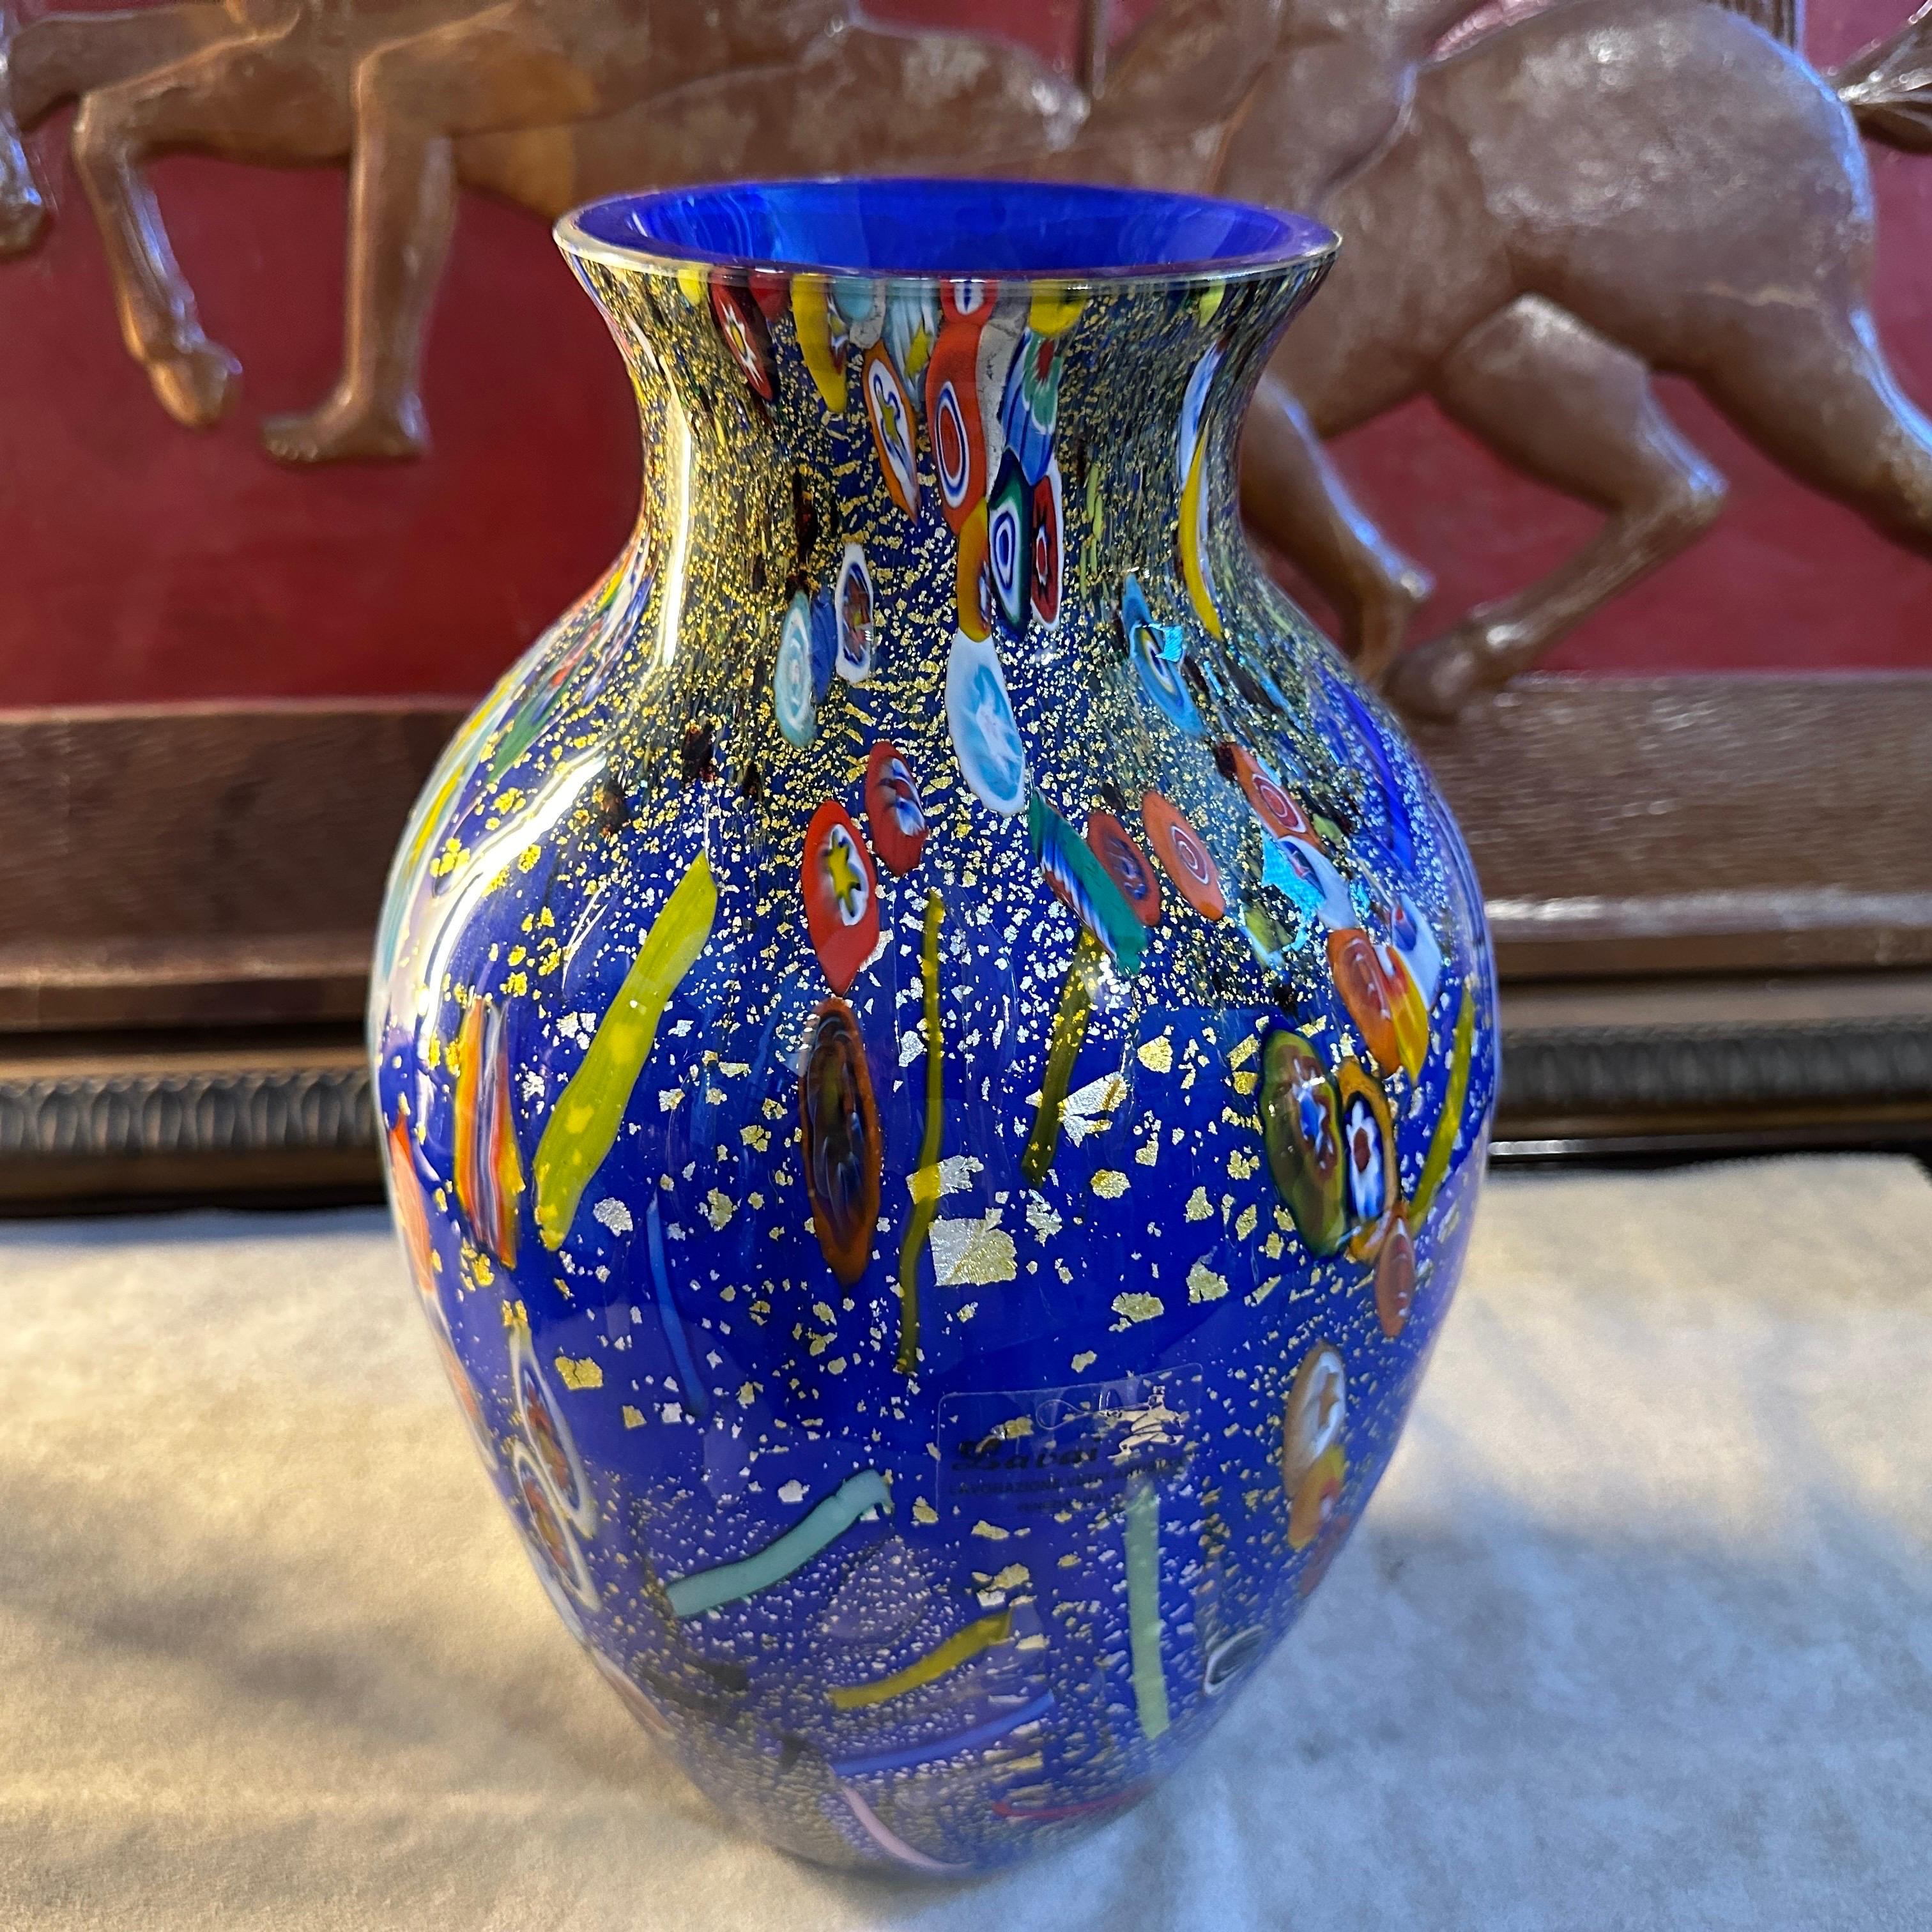 Eine besondere blaue Murano-Glasvase mit Murrine-Einsätzen im Stil von Dino Martens, hergestellt in Italien in den 1980er Jahren, ist ein Einzelstück. Die Vase ist ein fesselndes und exquisites Stück, das die berühmte Handwerkskunst und die